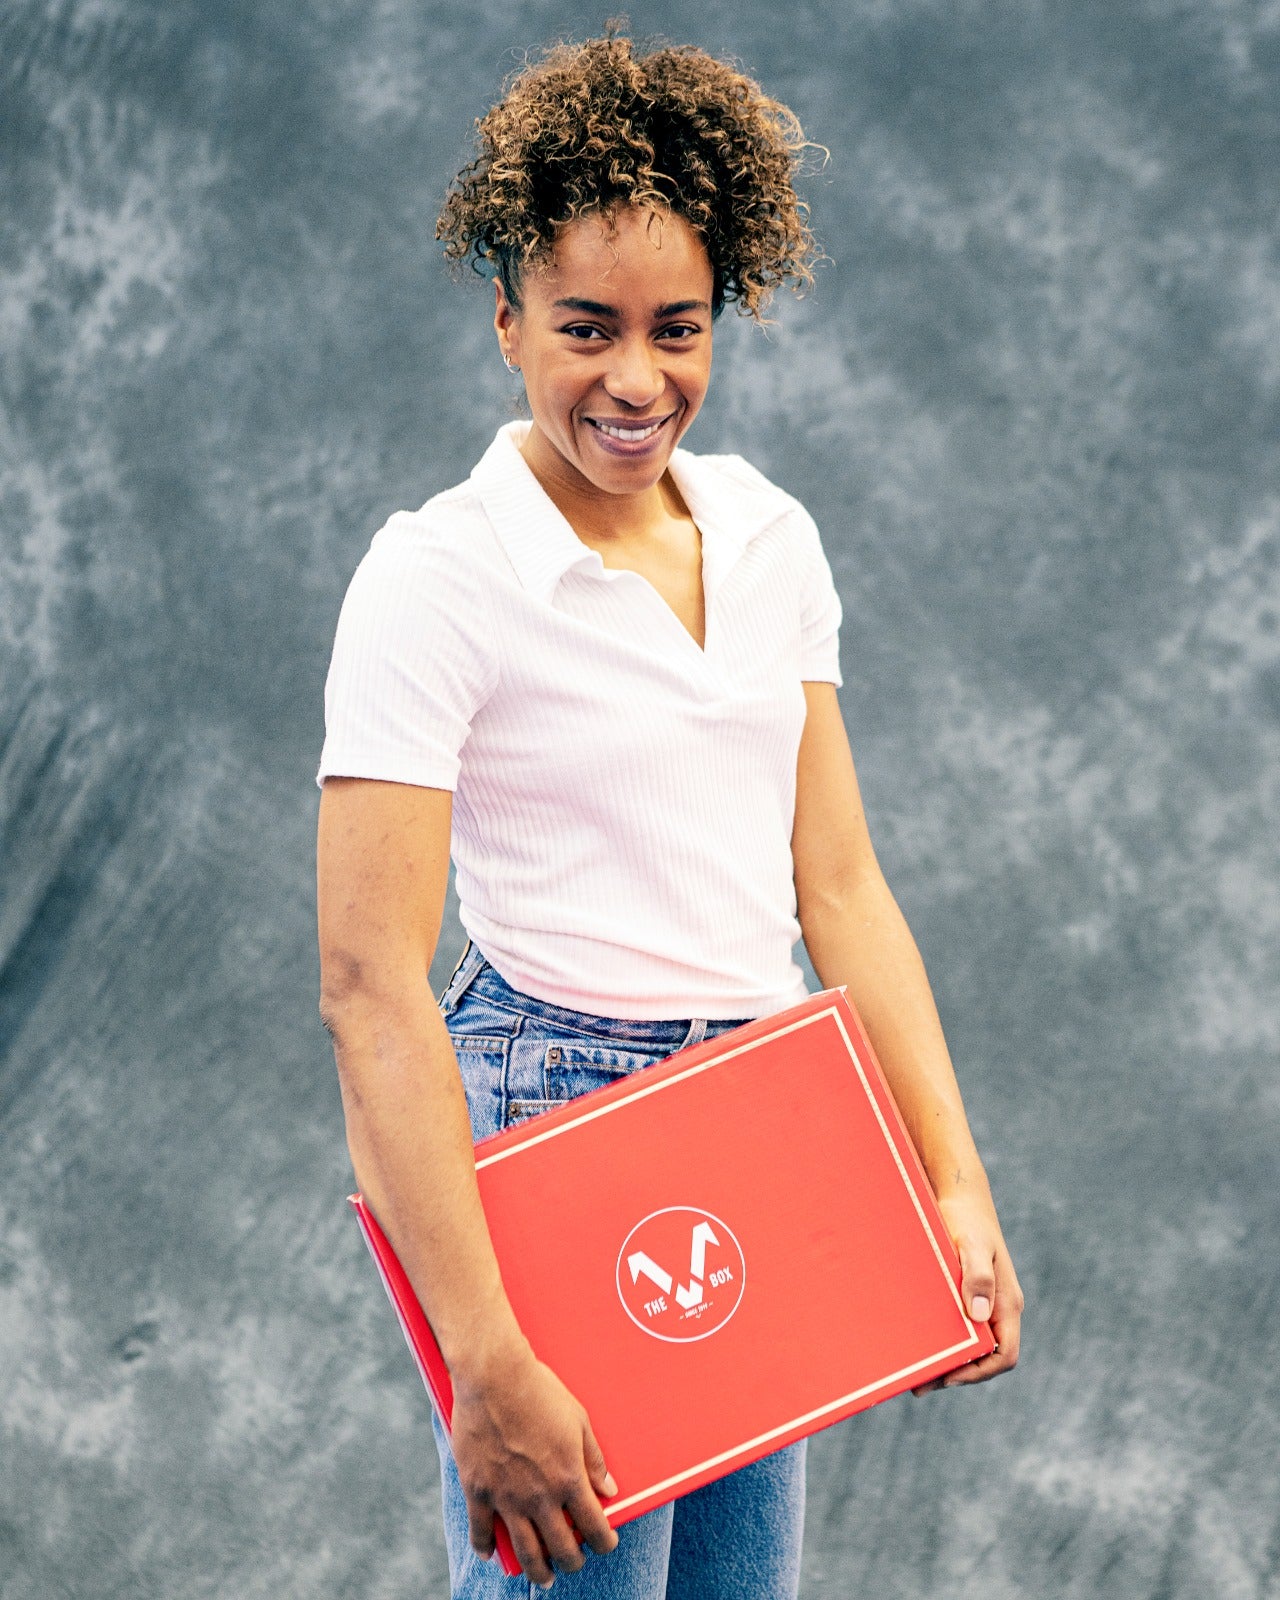 the v box est une box vertueuse et engagée à promouvoir l'entrepreneuriat féminin